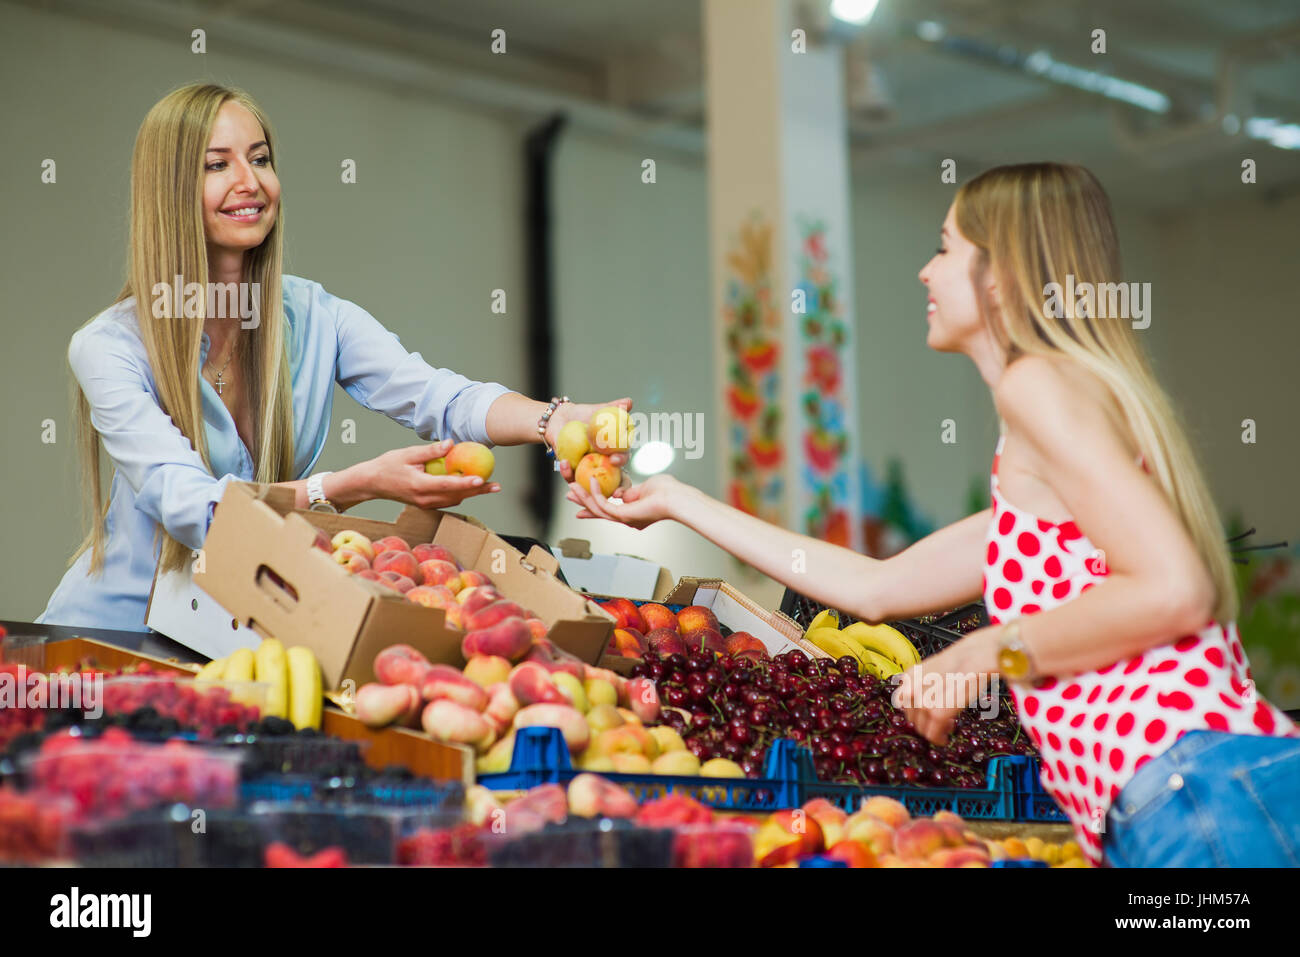 Девушка продавала персики. Левушка с фруктам на. Рынке. Женщина продает фрукты. Продавец овощей и фруктов. Девушка продает фрукты.